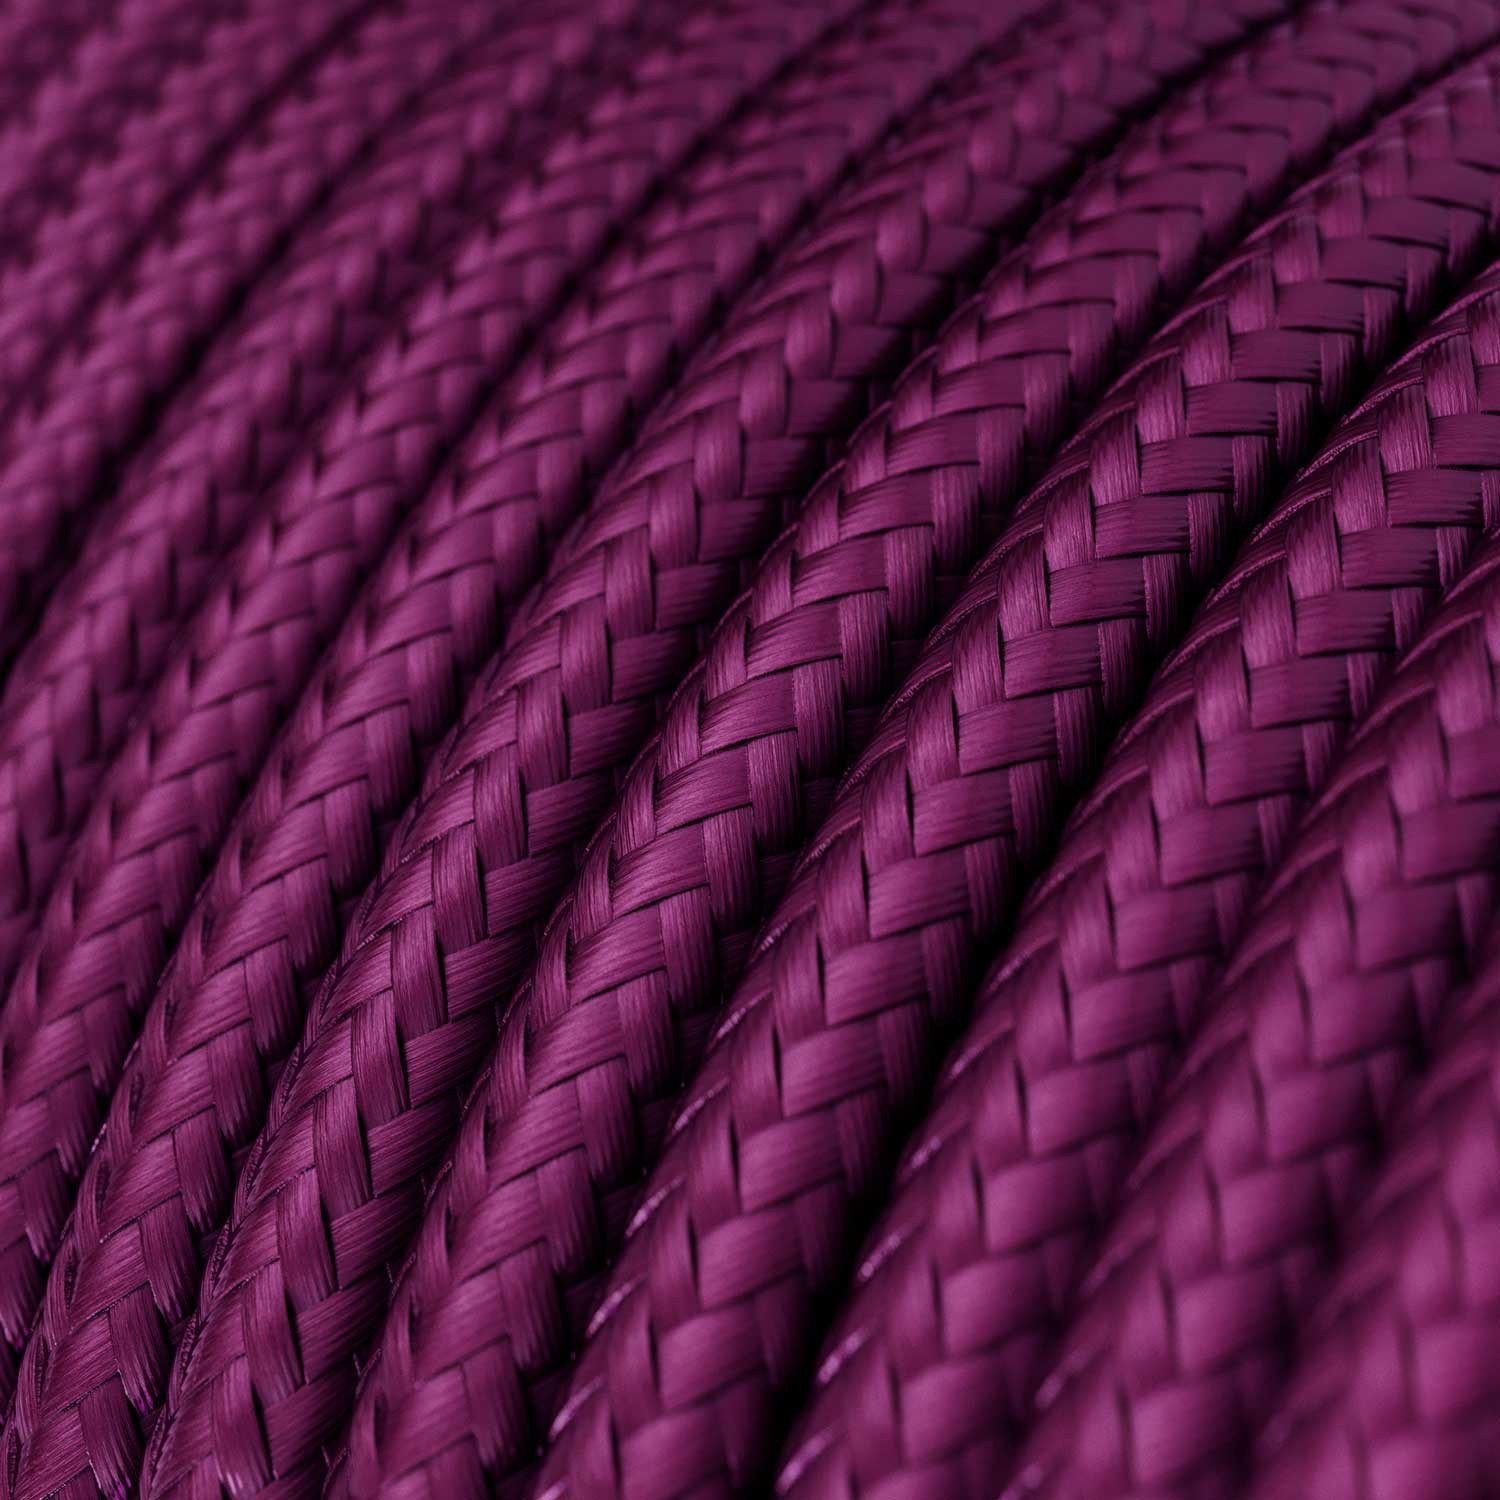 Ronde flexibele electriciteit textielkabel van viscose - RM35 ultraviolet